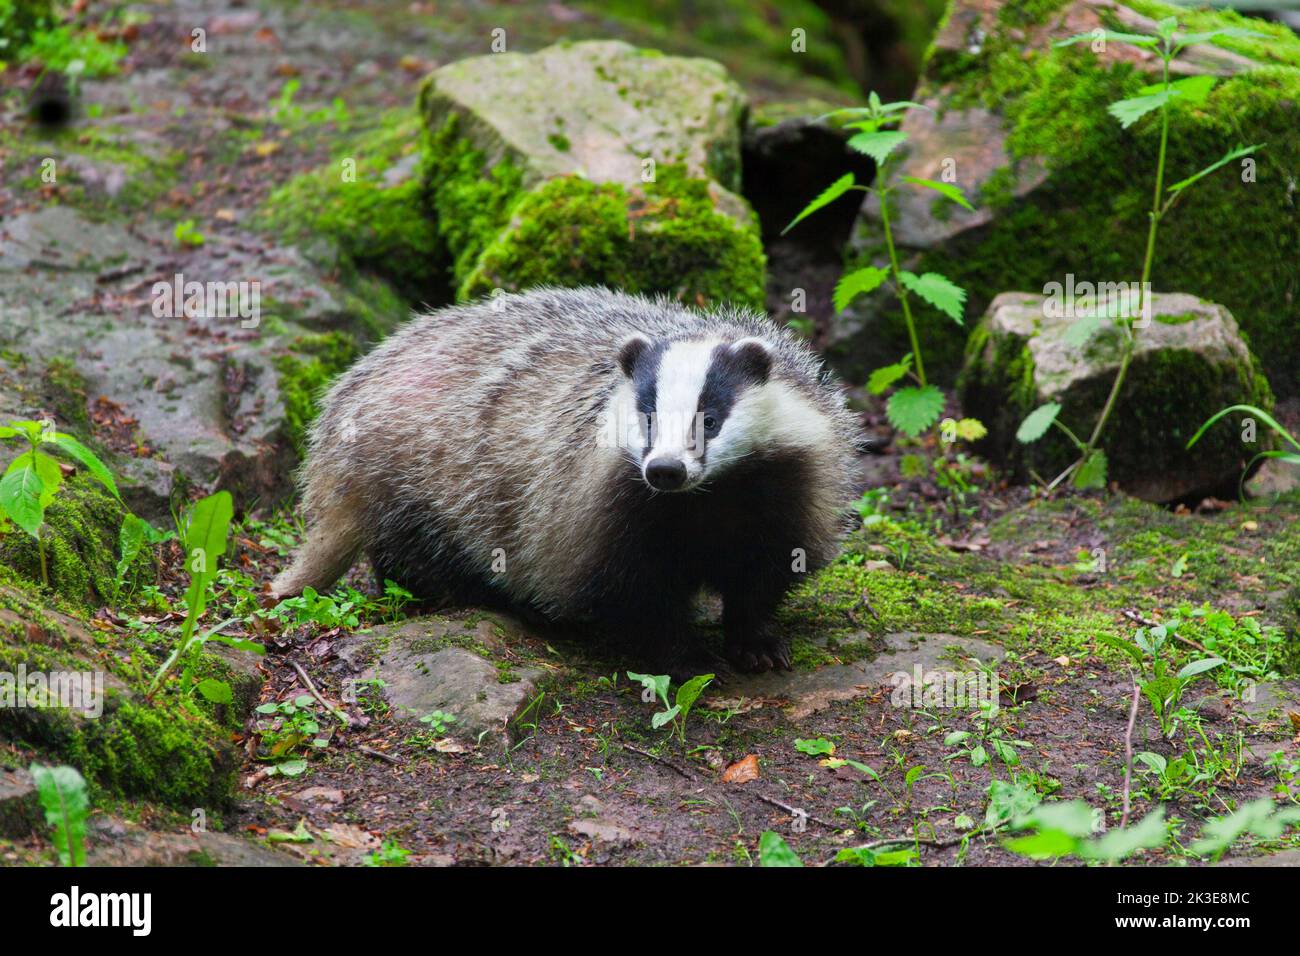 European badger (Meles meles) foraging among rocks in forest Stock Photo